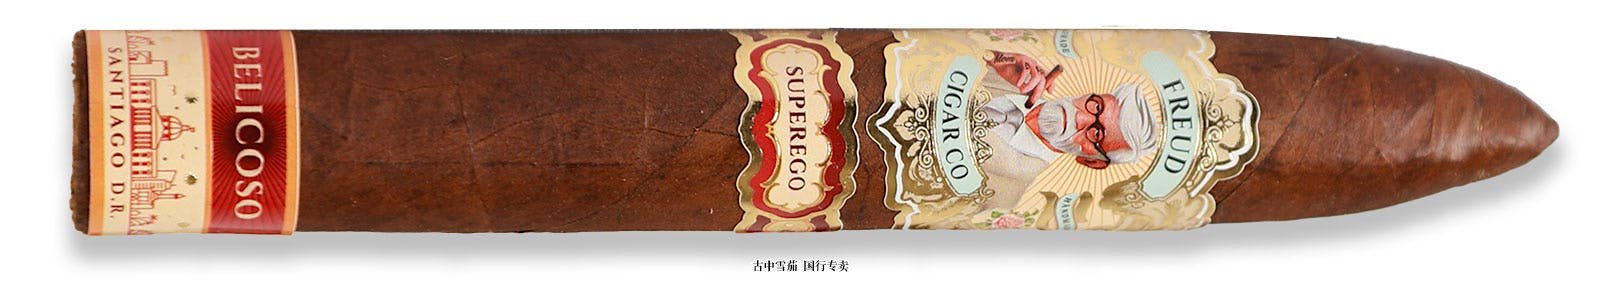 弗洛伊德雪茄公司